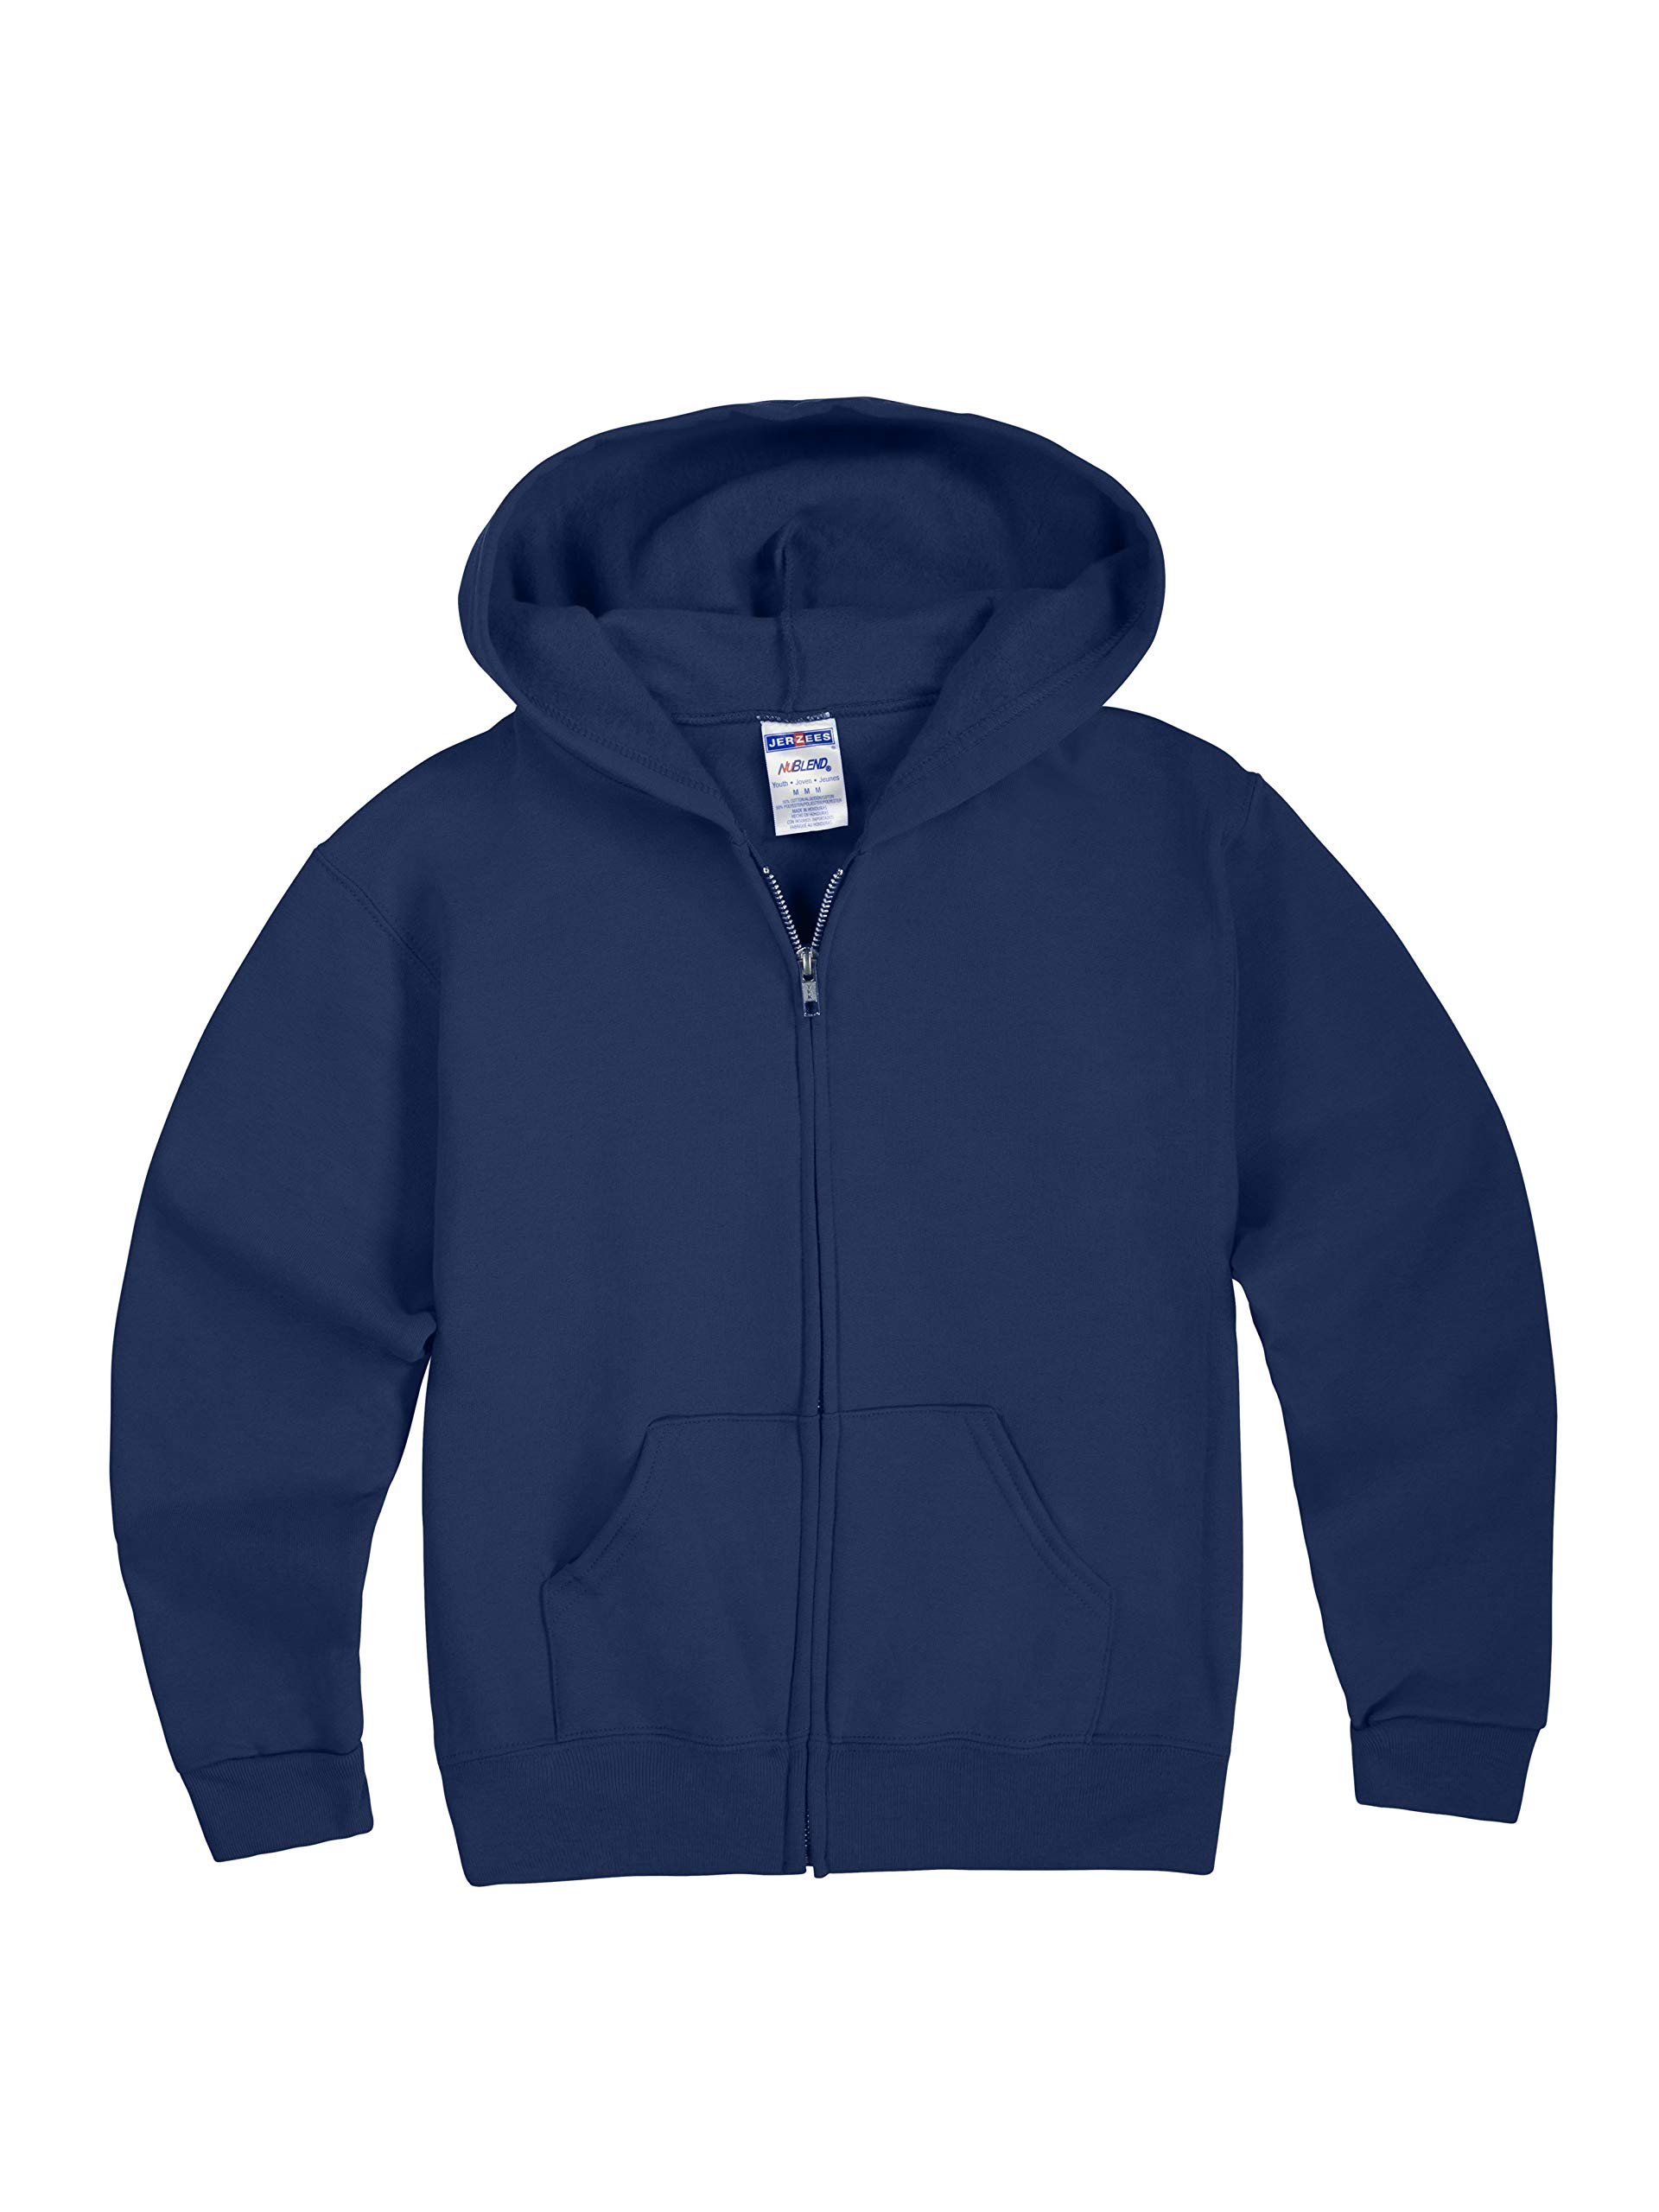 Jerzees boys Fleece Sweatshirts, Hoodies & Sweatpants Hooded Sweatshirt, Full Zip - Navy, Small US